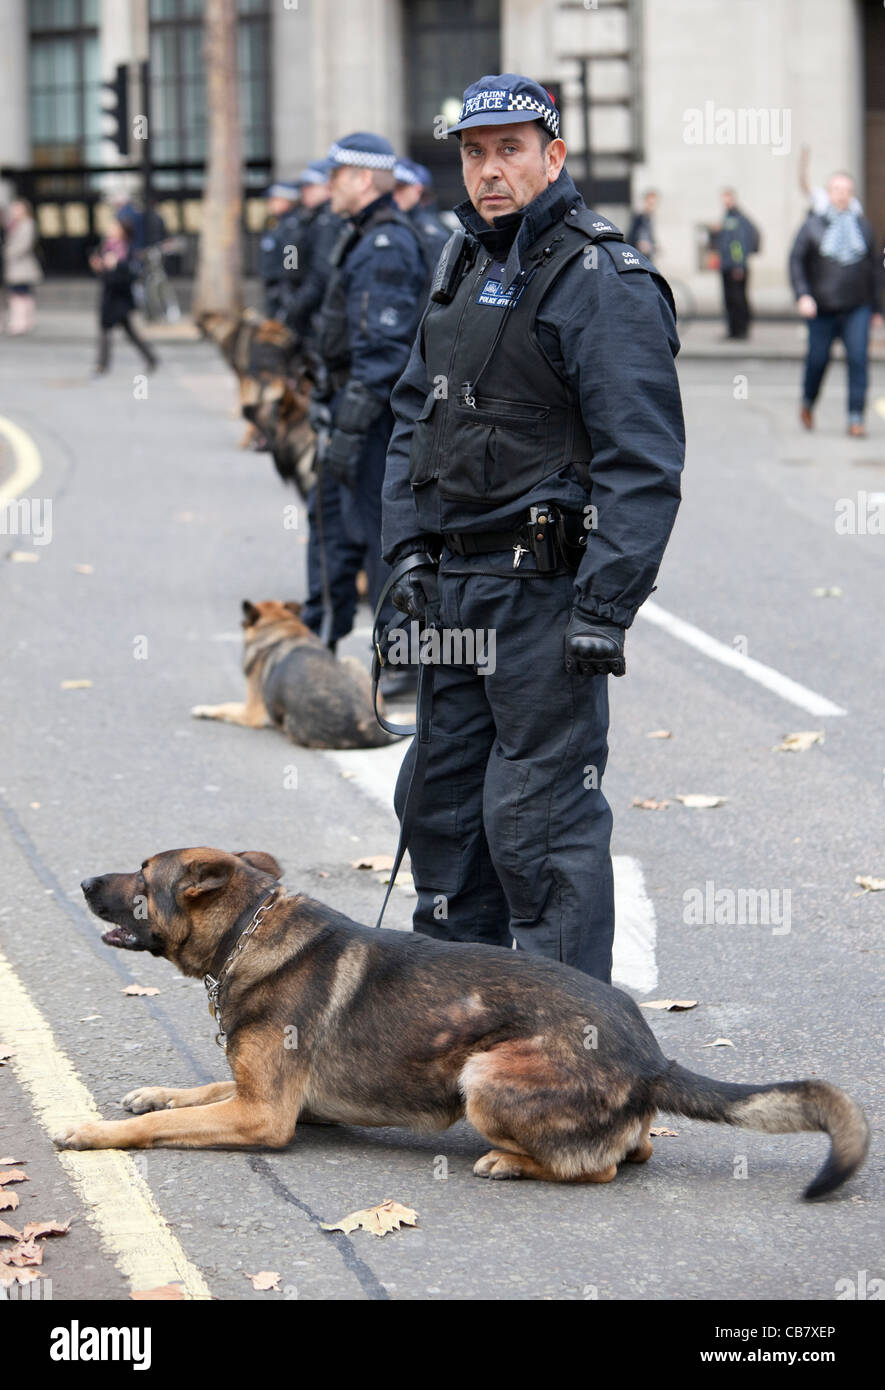 Polizia antisommossa britannica con cani, allo sciopero del settore pubblico (i sindacati), Londra, Inghilterra, 2011, Regno Unito. Foto Stock